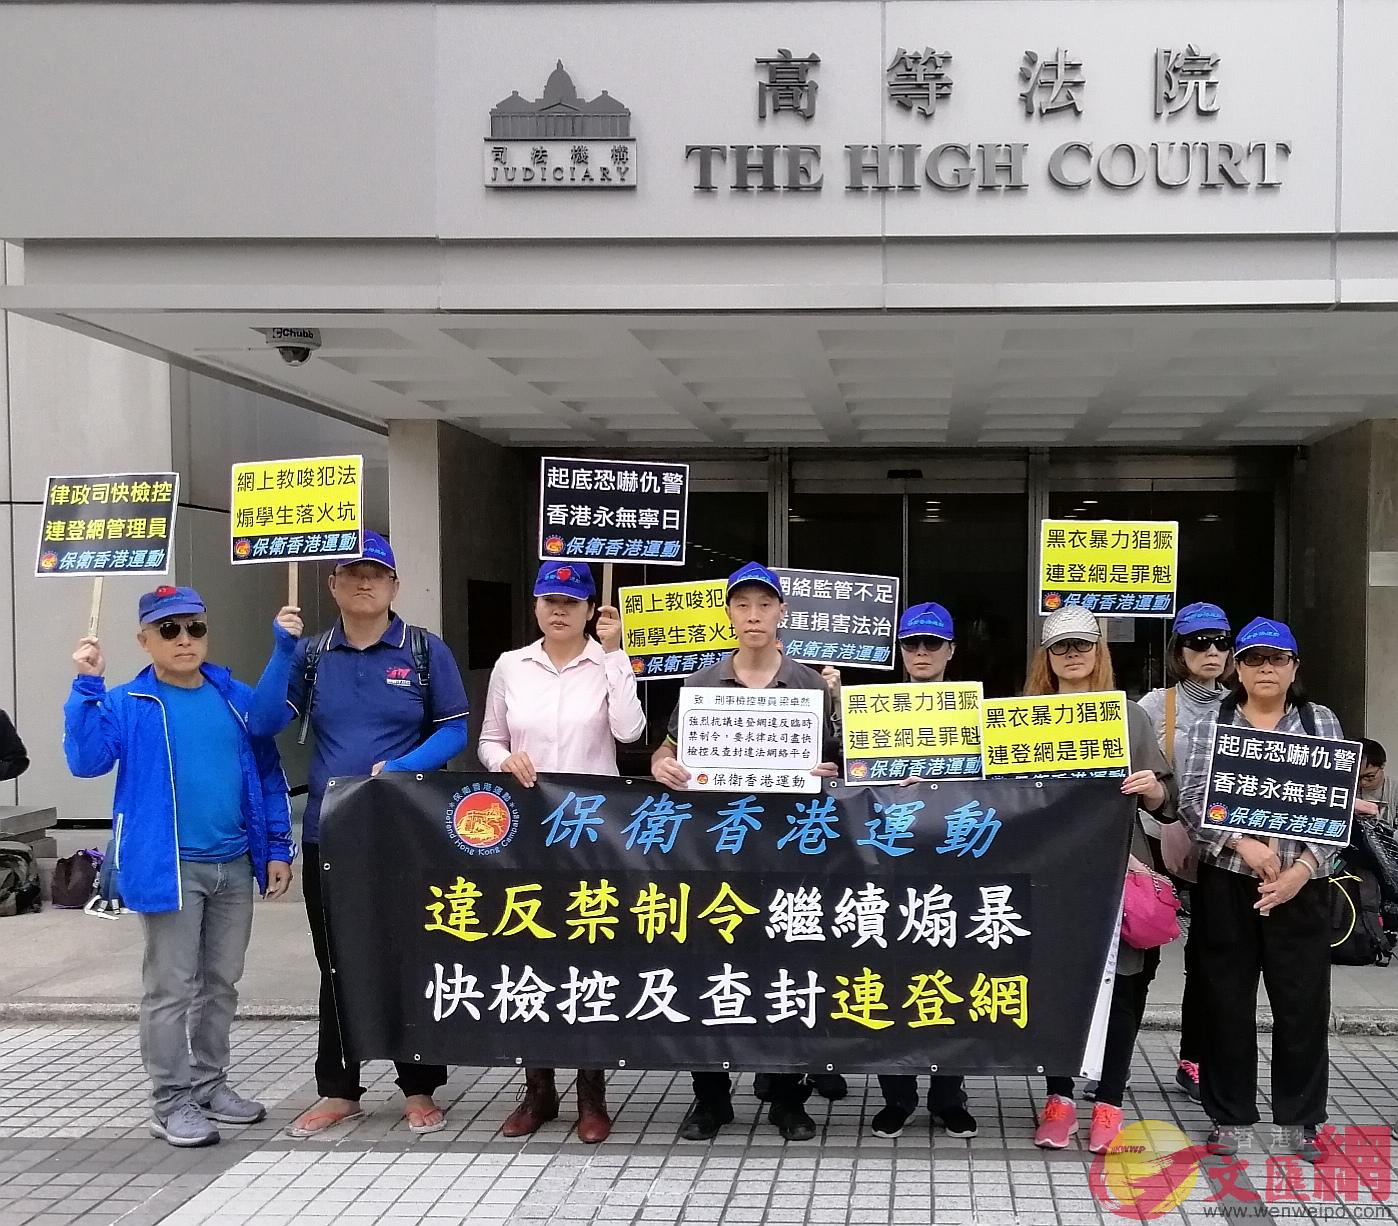 香港民間團體「保衛香港運動」促請律政司對有違反臨時禁制令嫌疑的LIHKG（連登）及Telegram採取深入調查和搜證